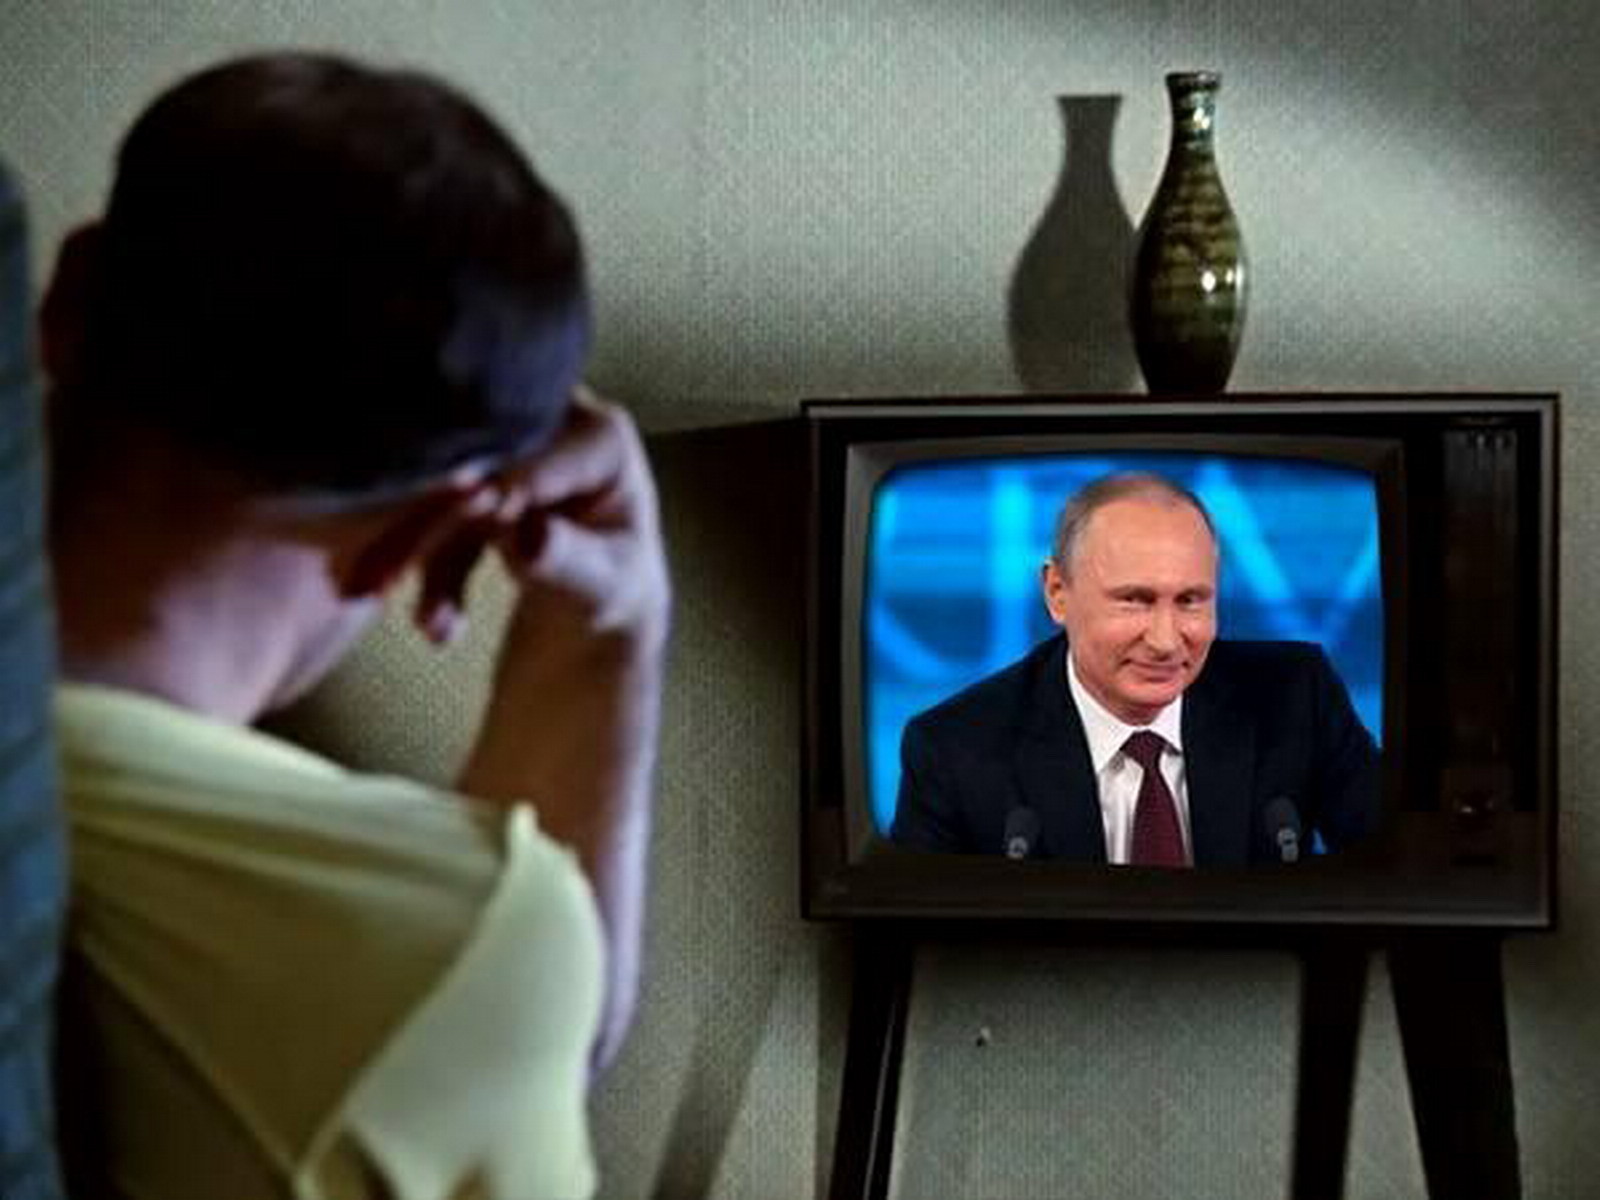 Показать что показывают по телевизору сегодня. Человек телевизор. Стырйтелефизор с Путиным.